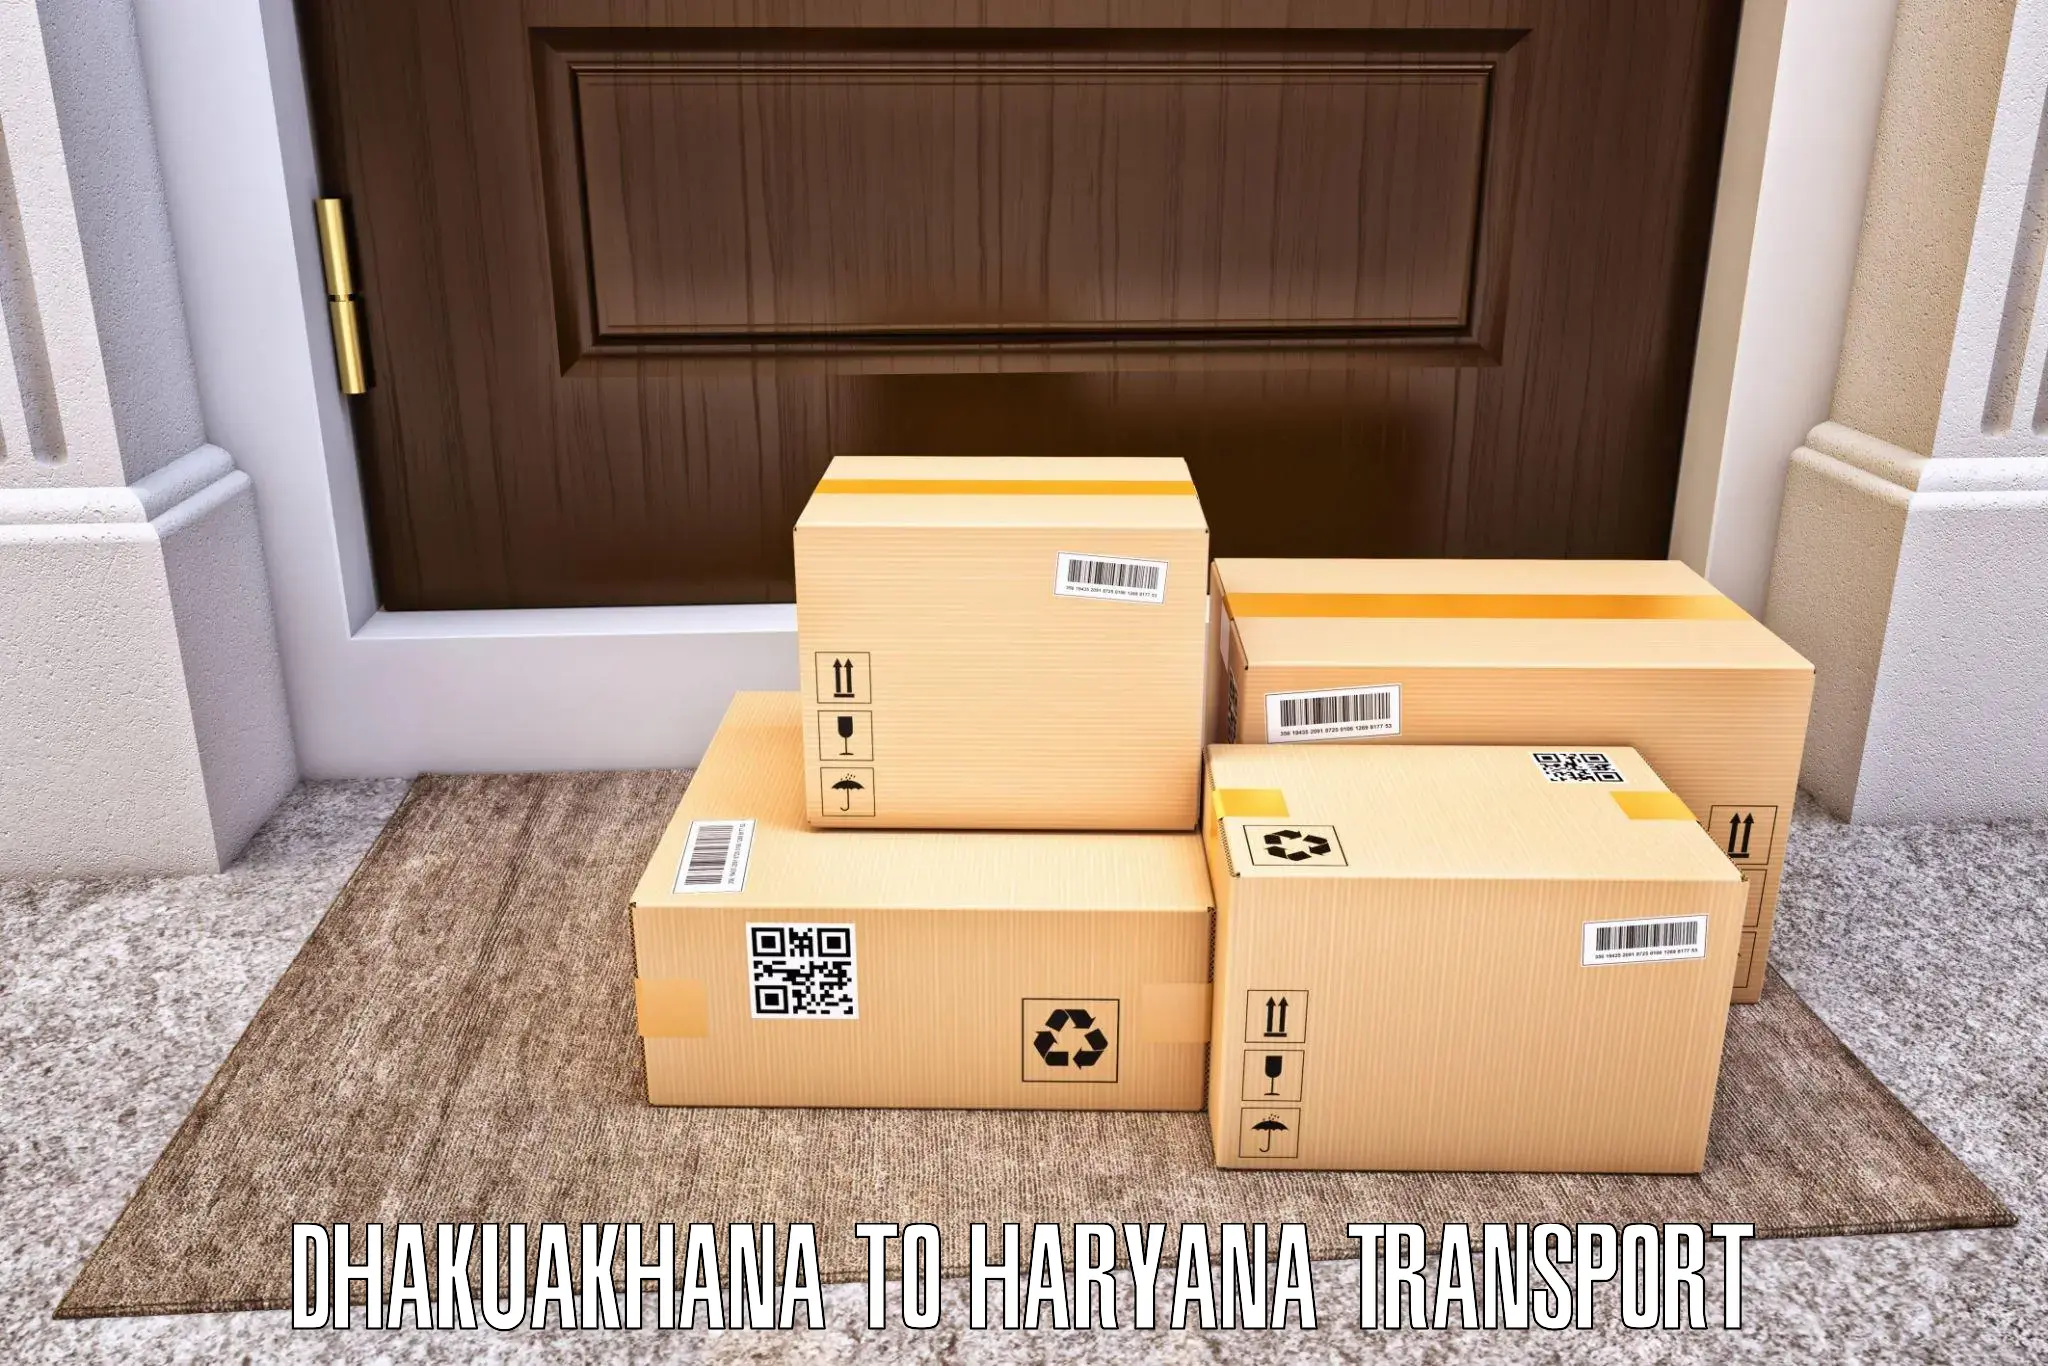 Shipping services Dhakuakhana to Faridabad